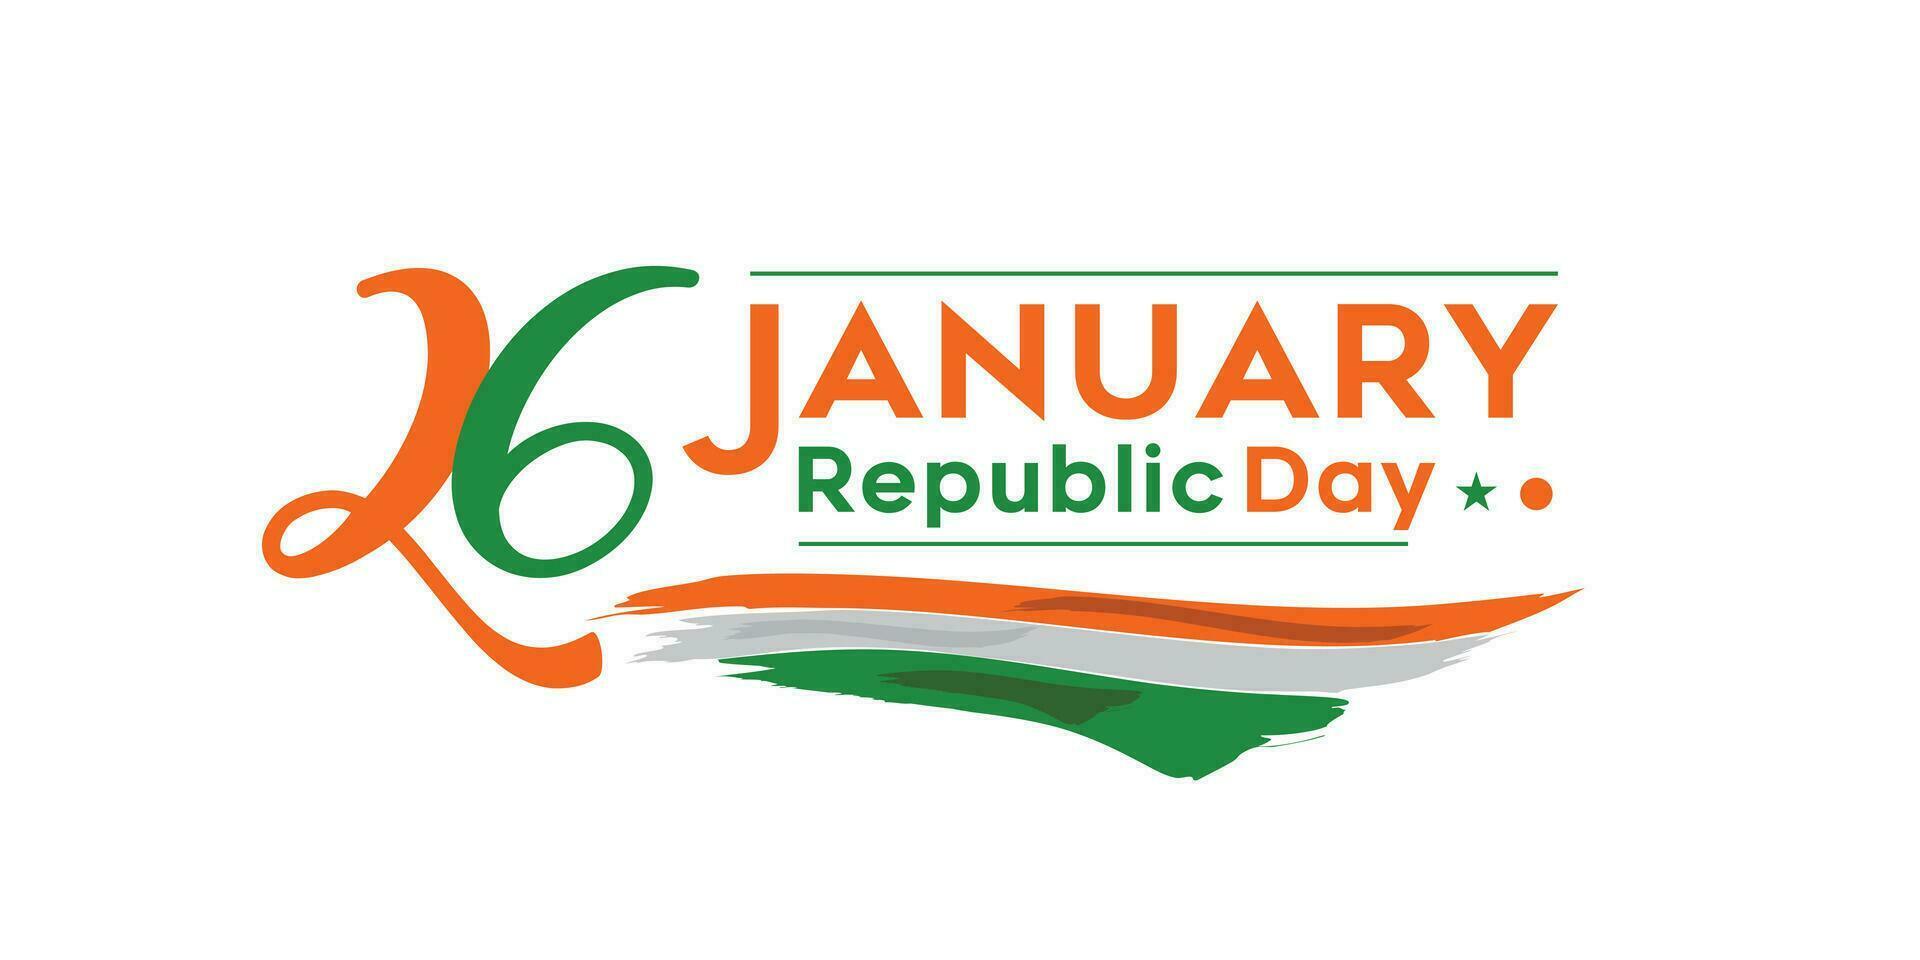 Indien république journée concept avec texte 26 Janvier. vecteur illustration